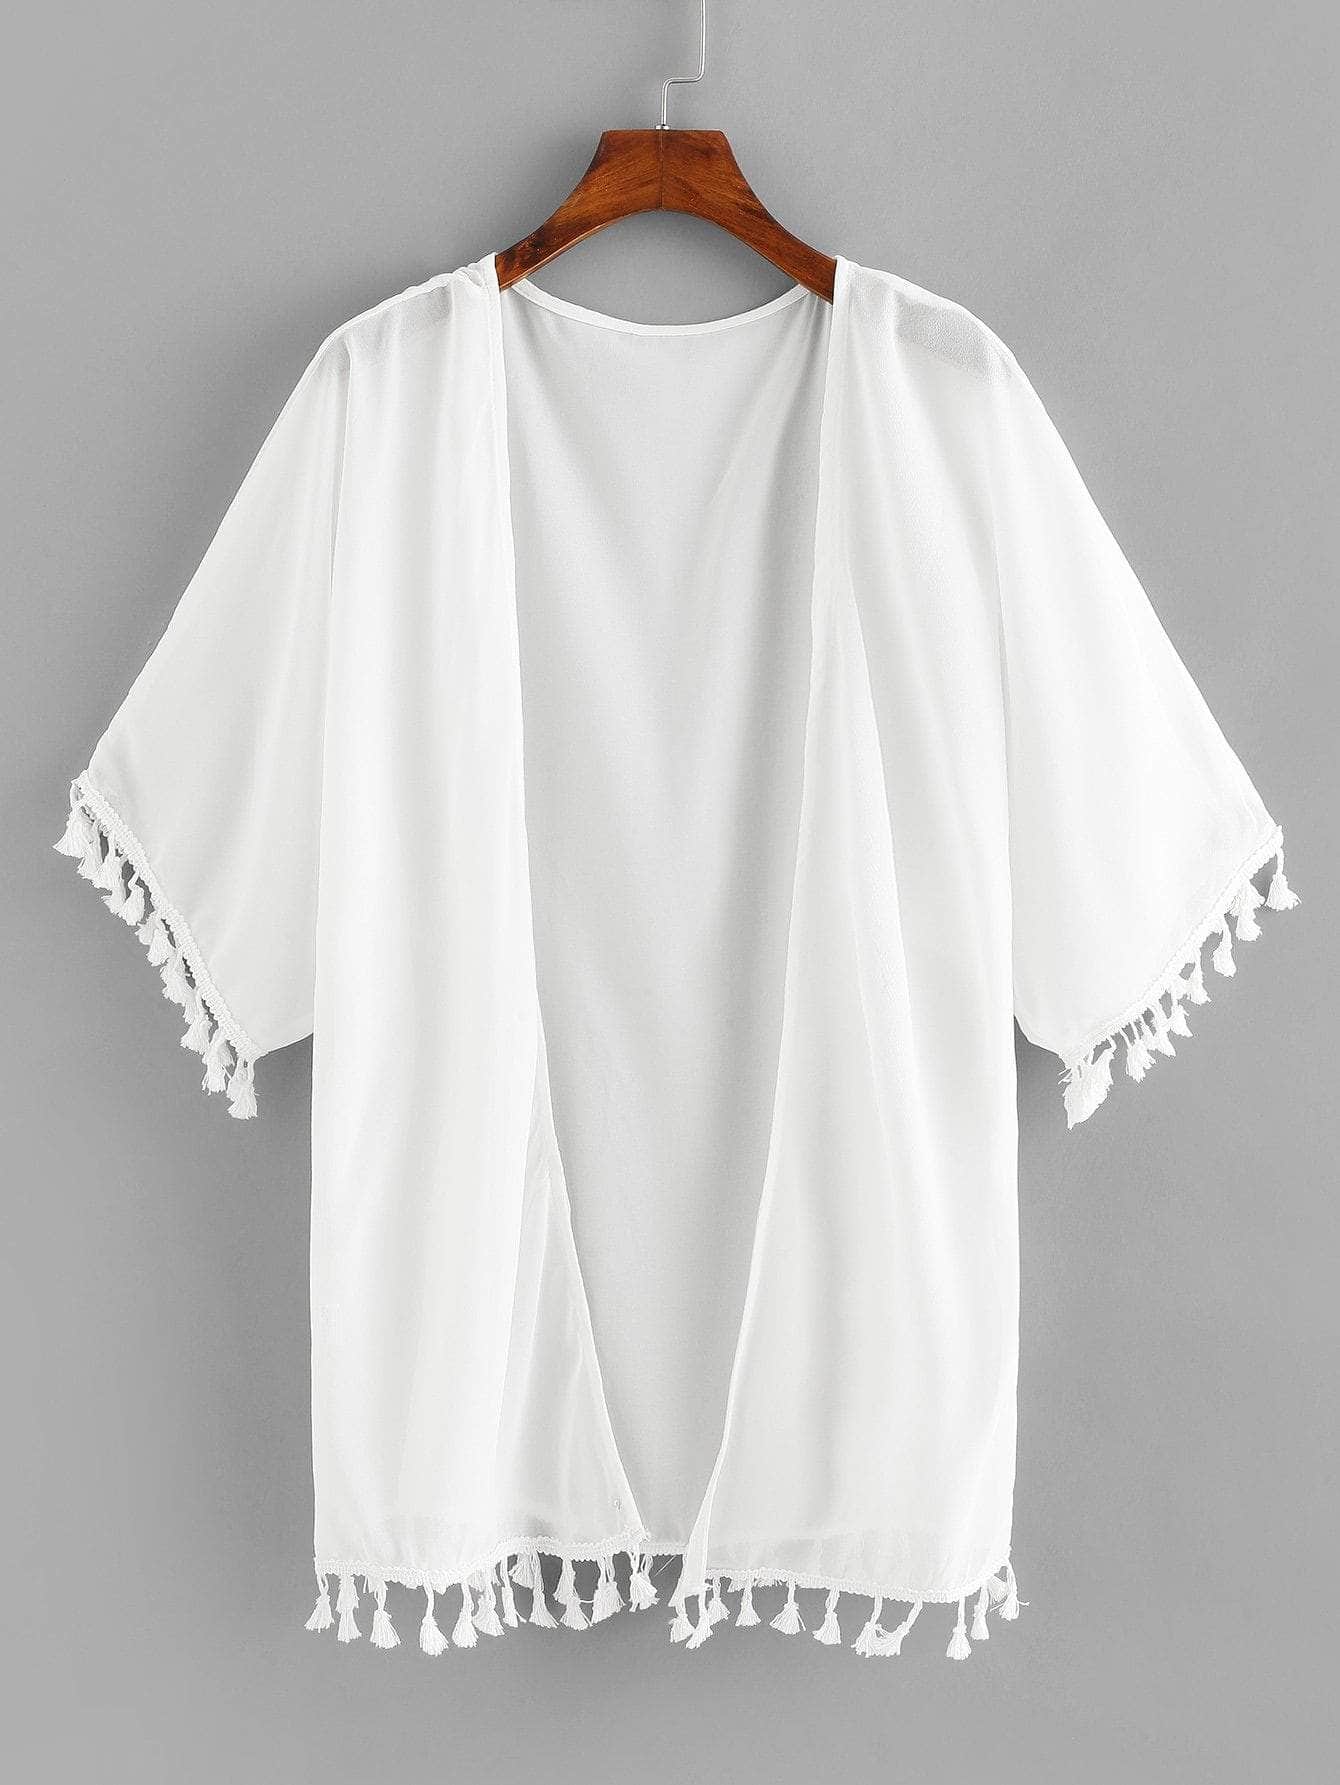 Blanco / XL Kimono abierto con borlas